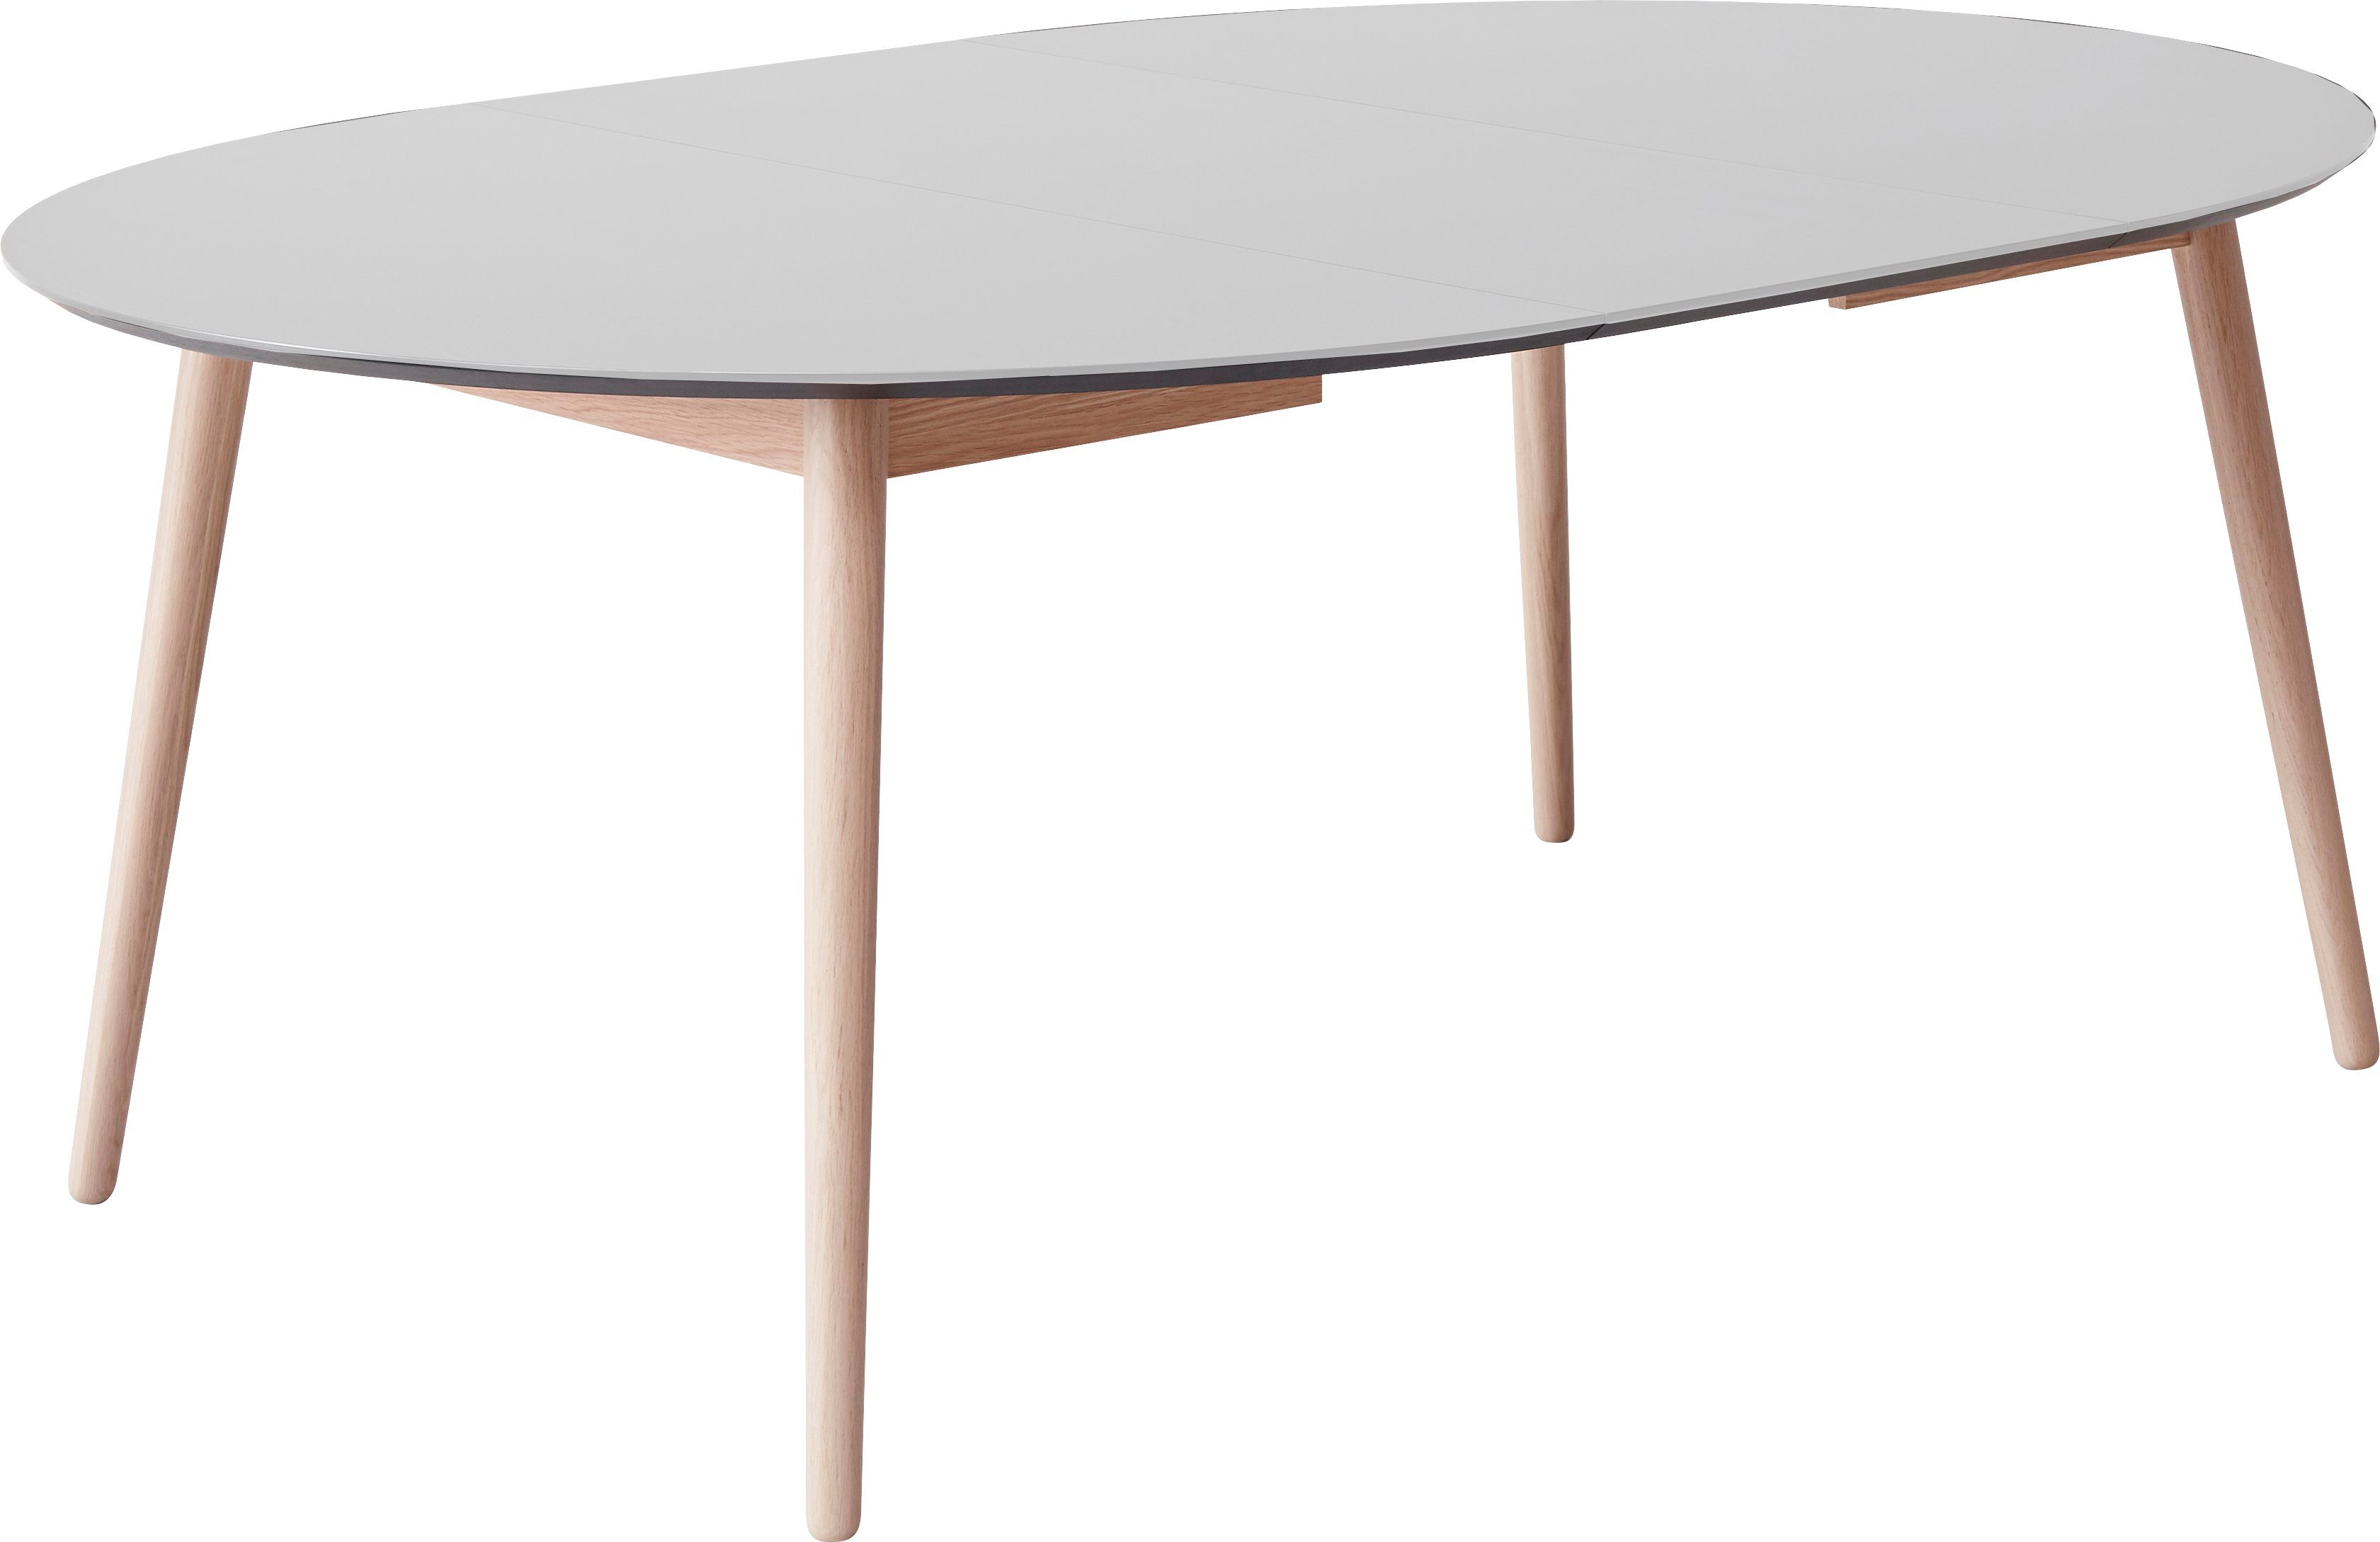 Hammel Furniture Esstisch Meza by Tischplatte Hammel, Weiß Massivholzgestell cm, runde Ø135(231) MDF/Laminat, aus